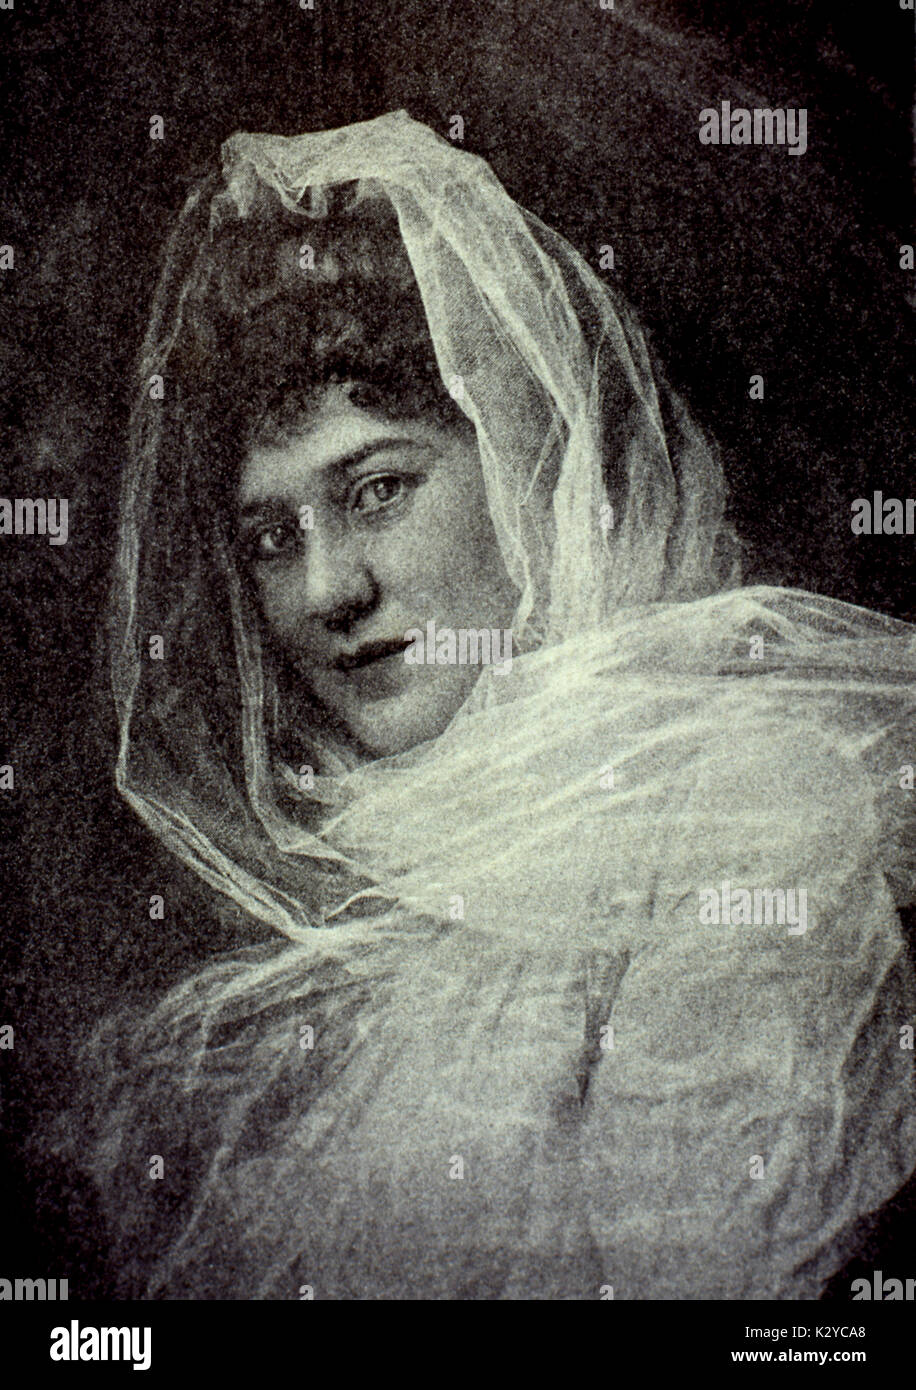 NORDICA, Lilian  c.1901 American soprano (1857-1914). Stock Photo